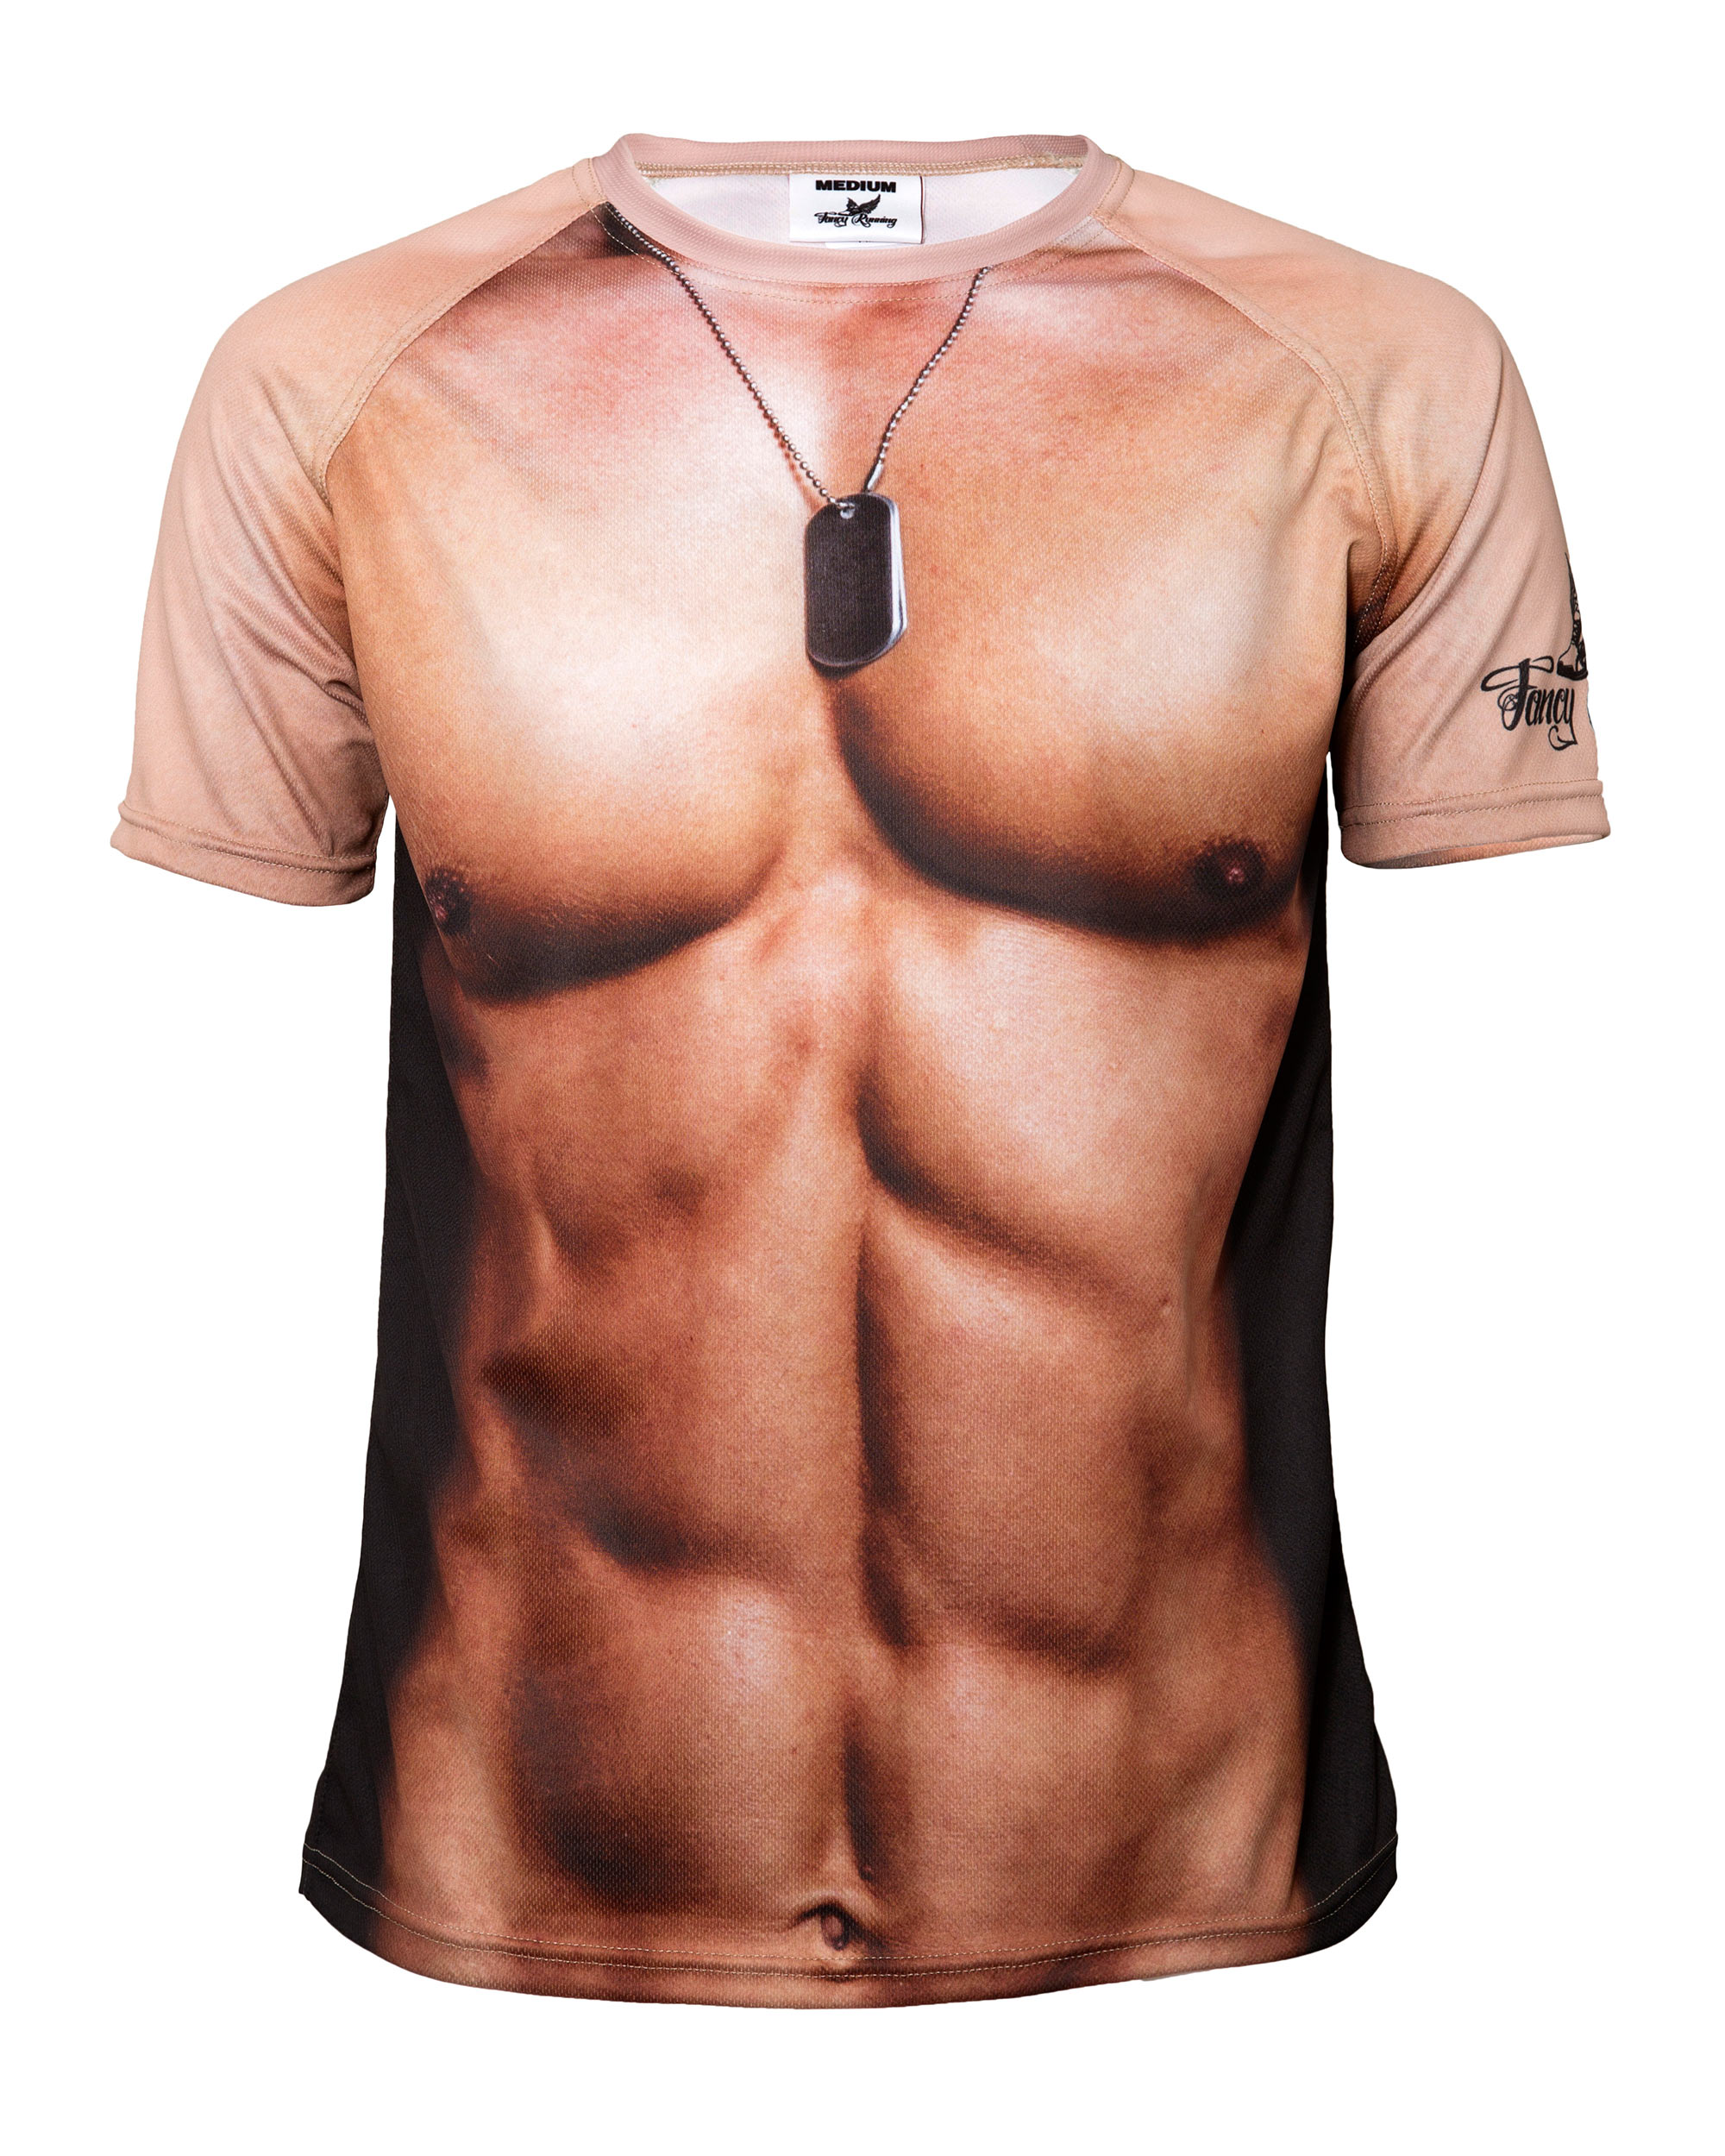 muscle-man-running-shirt-front.jpg